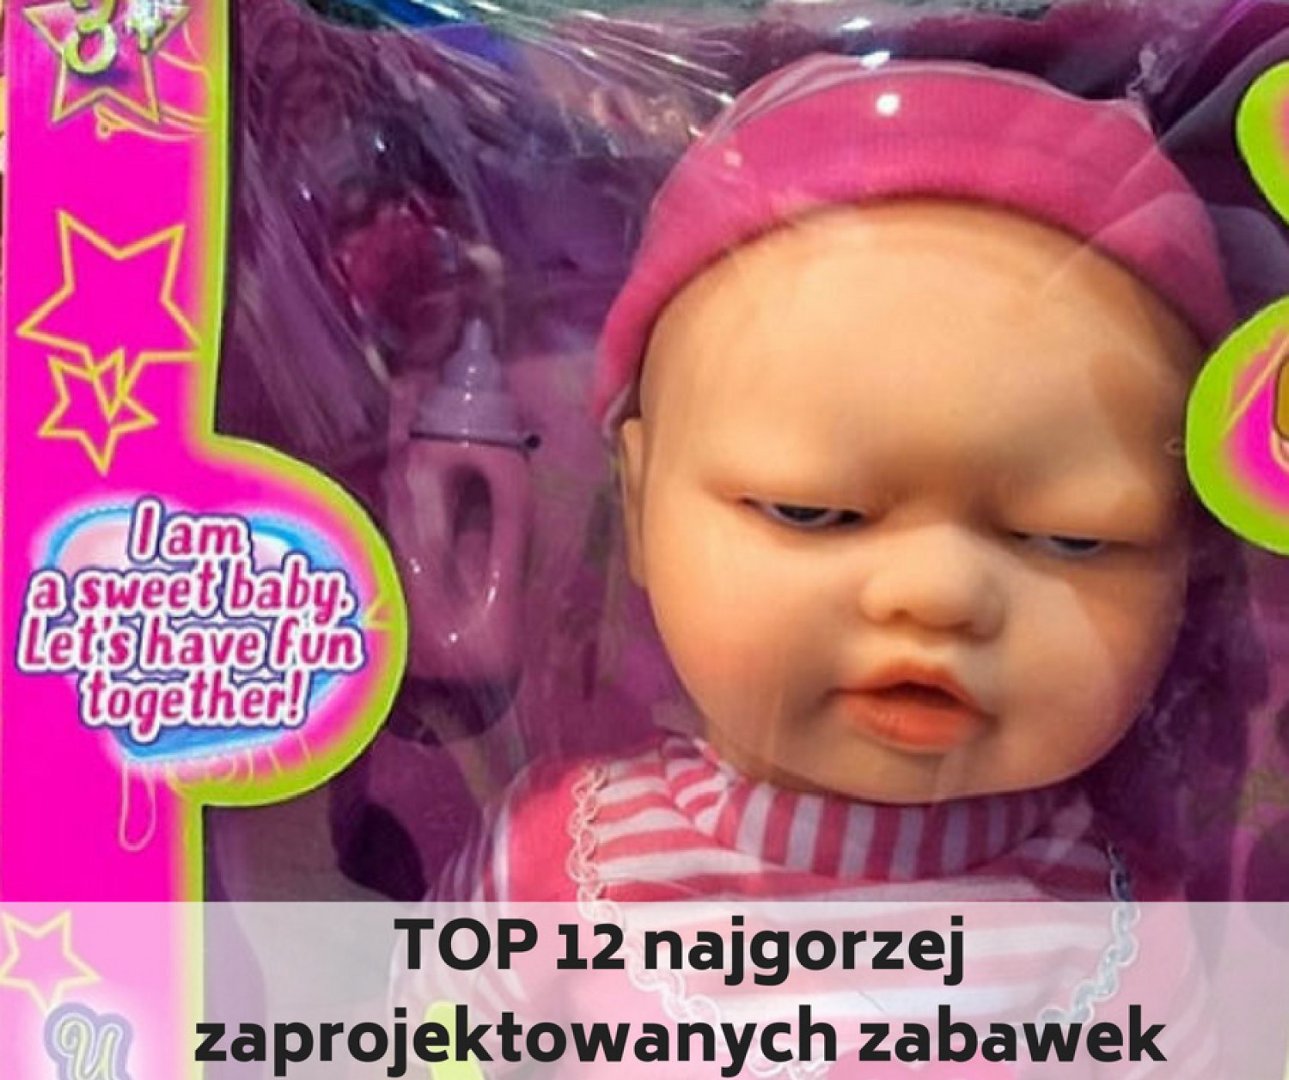 Dzień Dziecka last minute? To może się źle skończyć... Zobacz najgorsze  zabawki ever! | Poznań Nasze Miasto